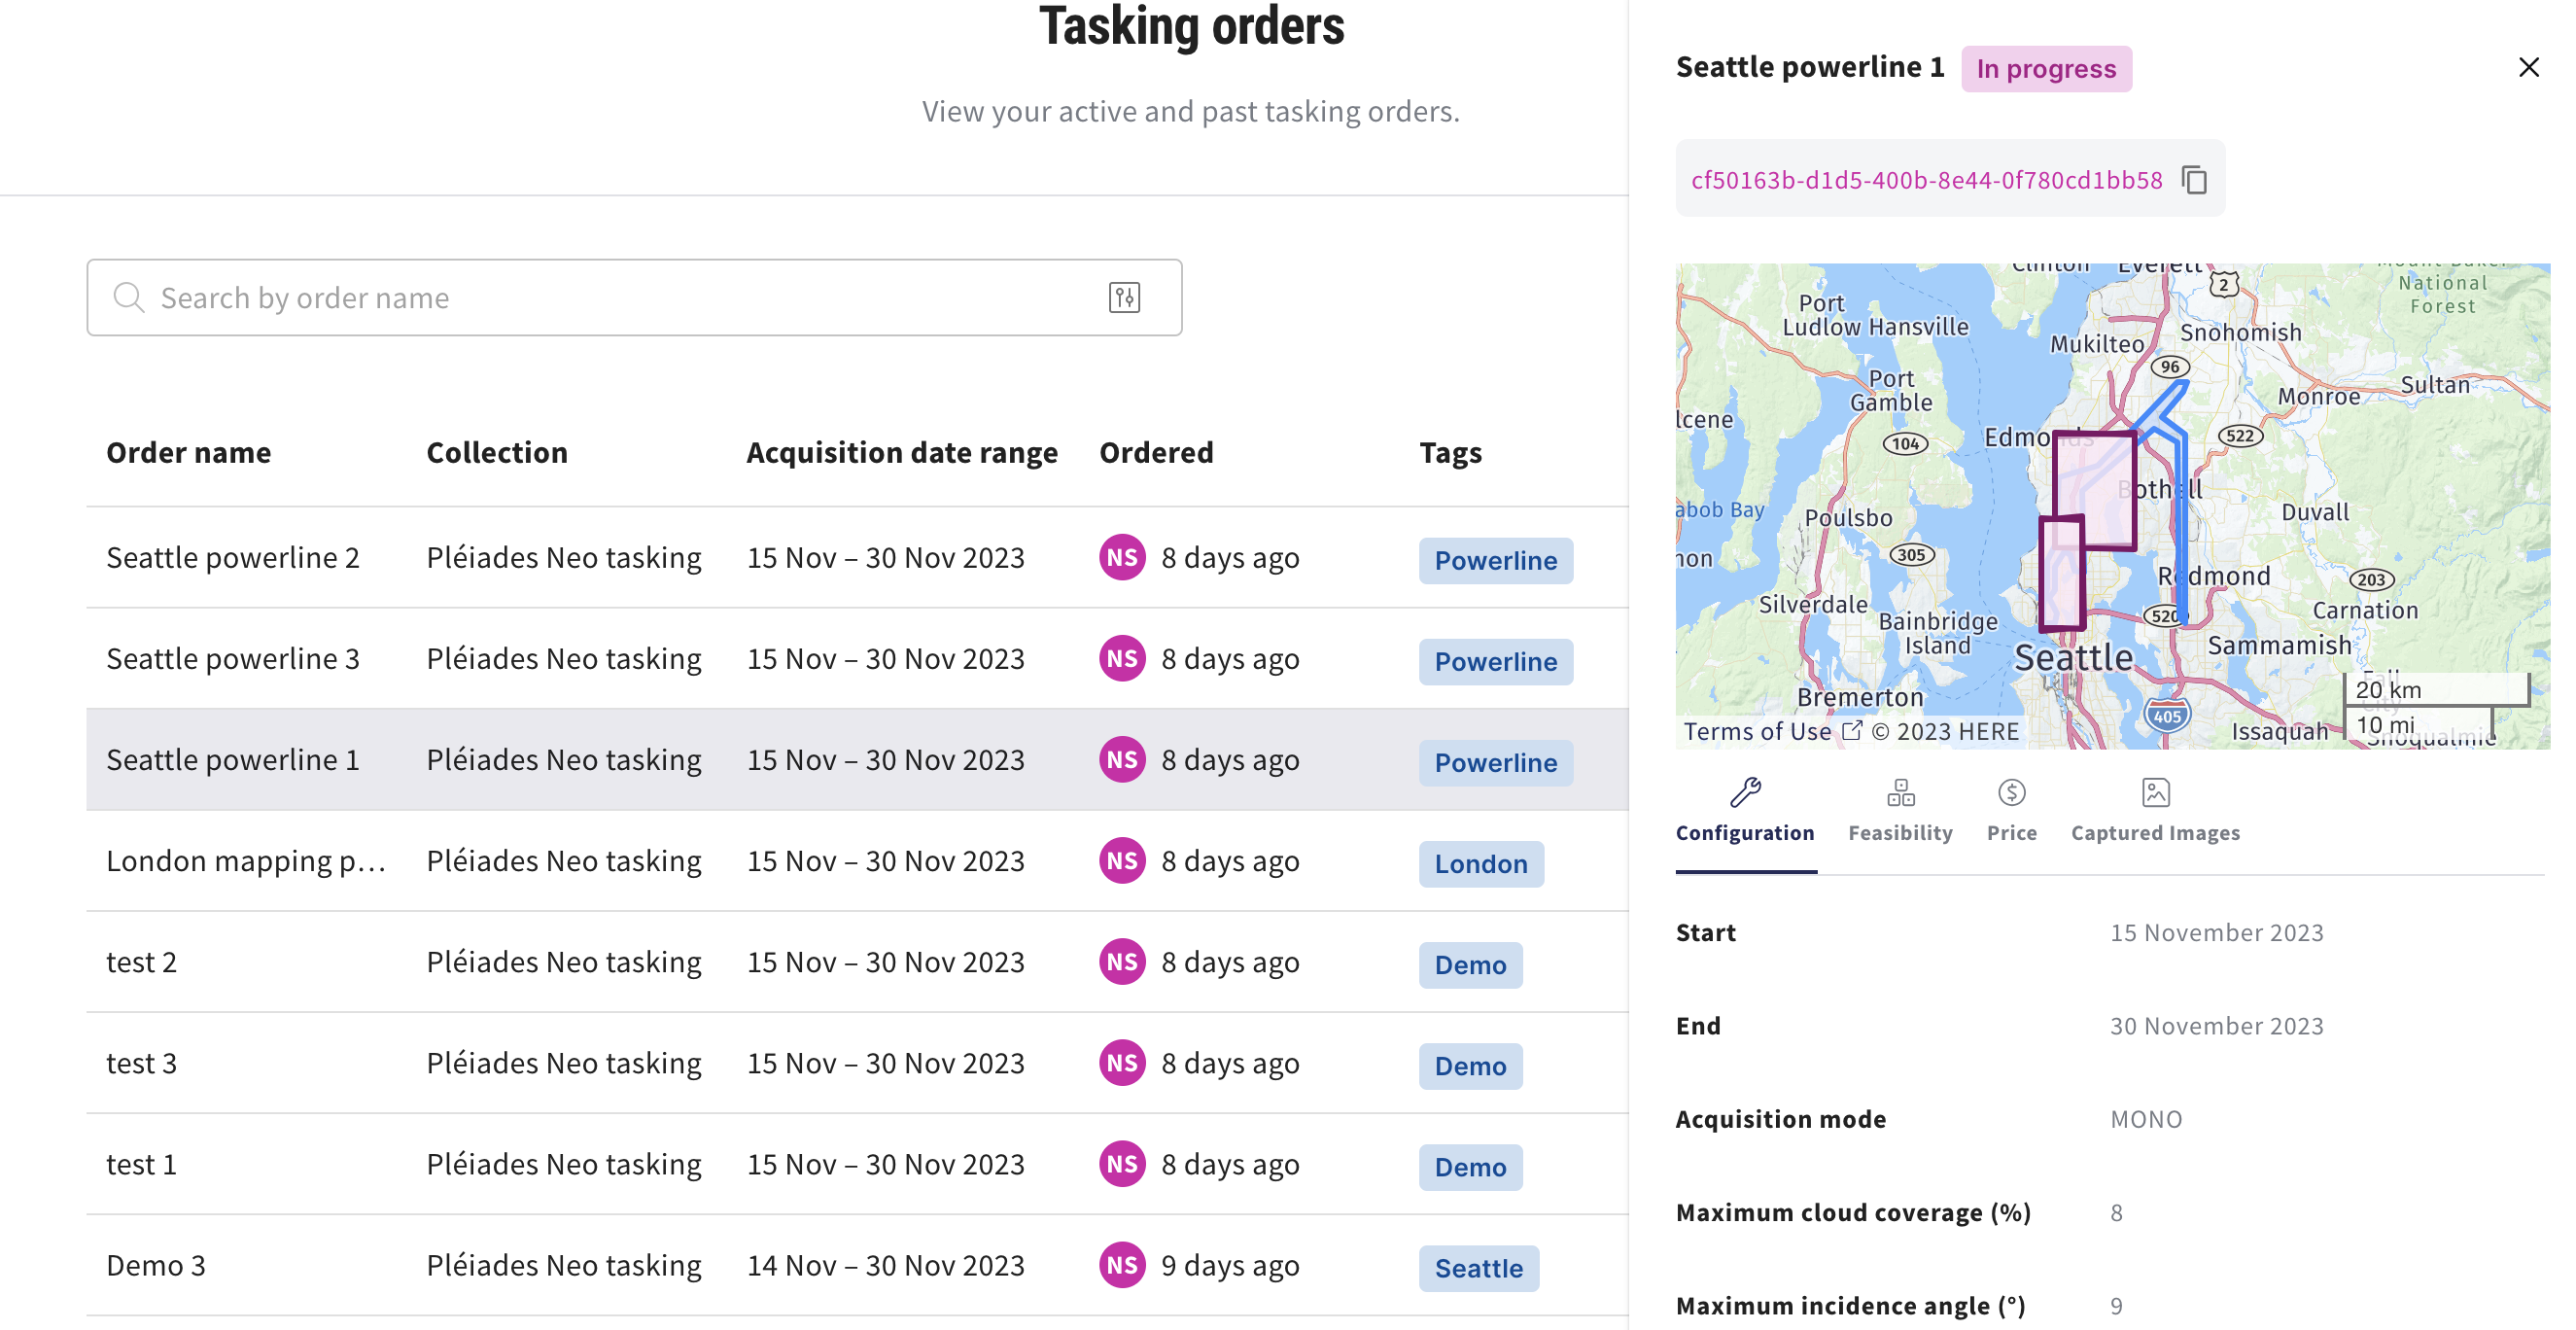 Tasking order progress screenshot